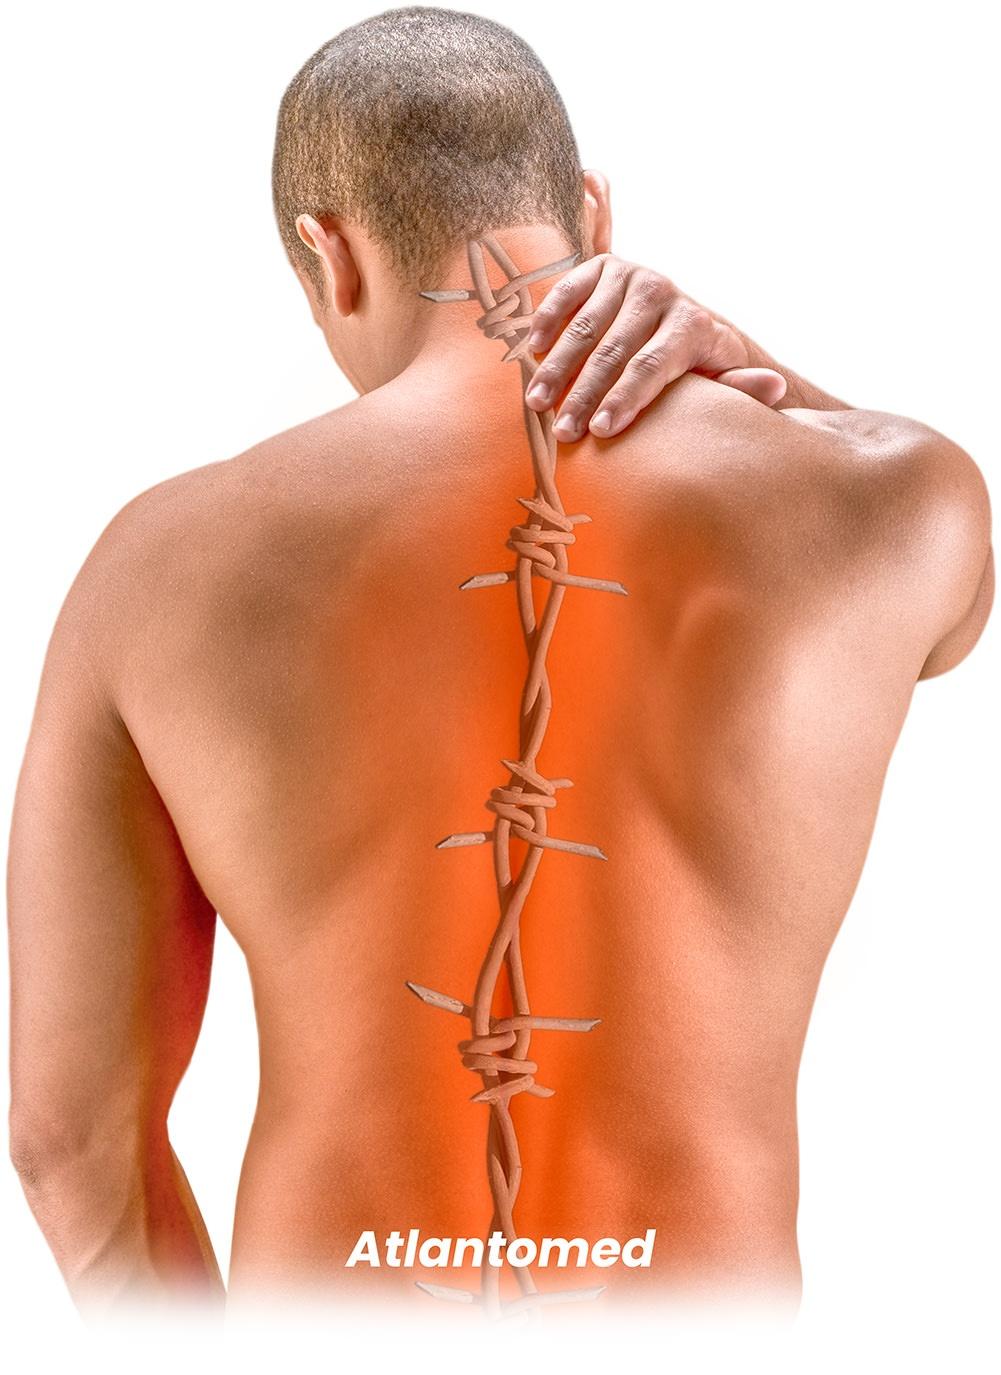 Mann mit Rückenschmerzen und Muskelverspannungen